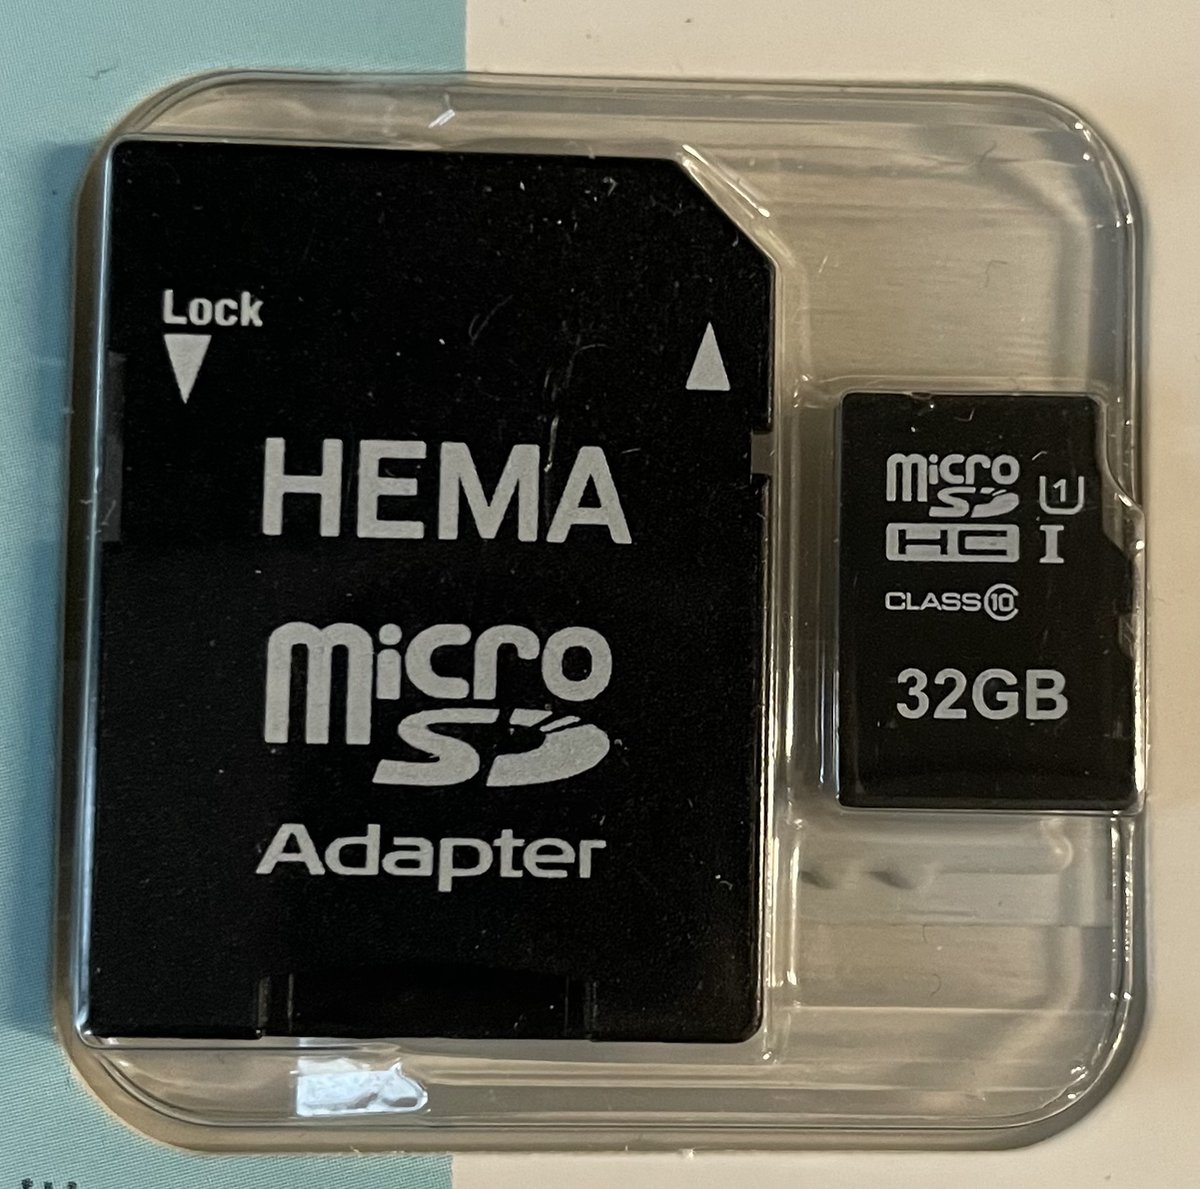 Hema - Carte mémoire Micro SDHC - 32 GB - Avec adaptateur pour format SD  normal - pour